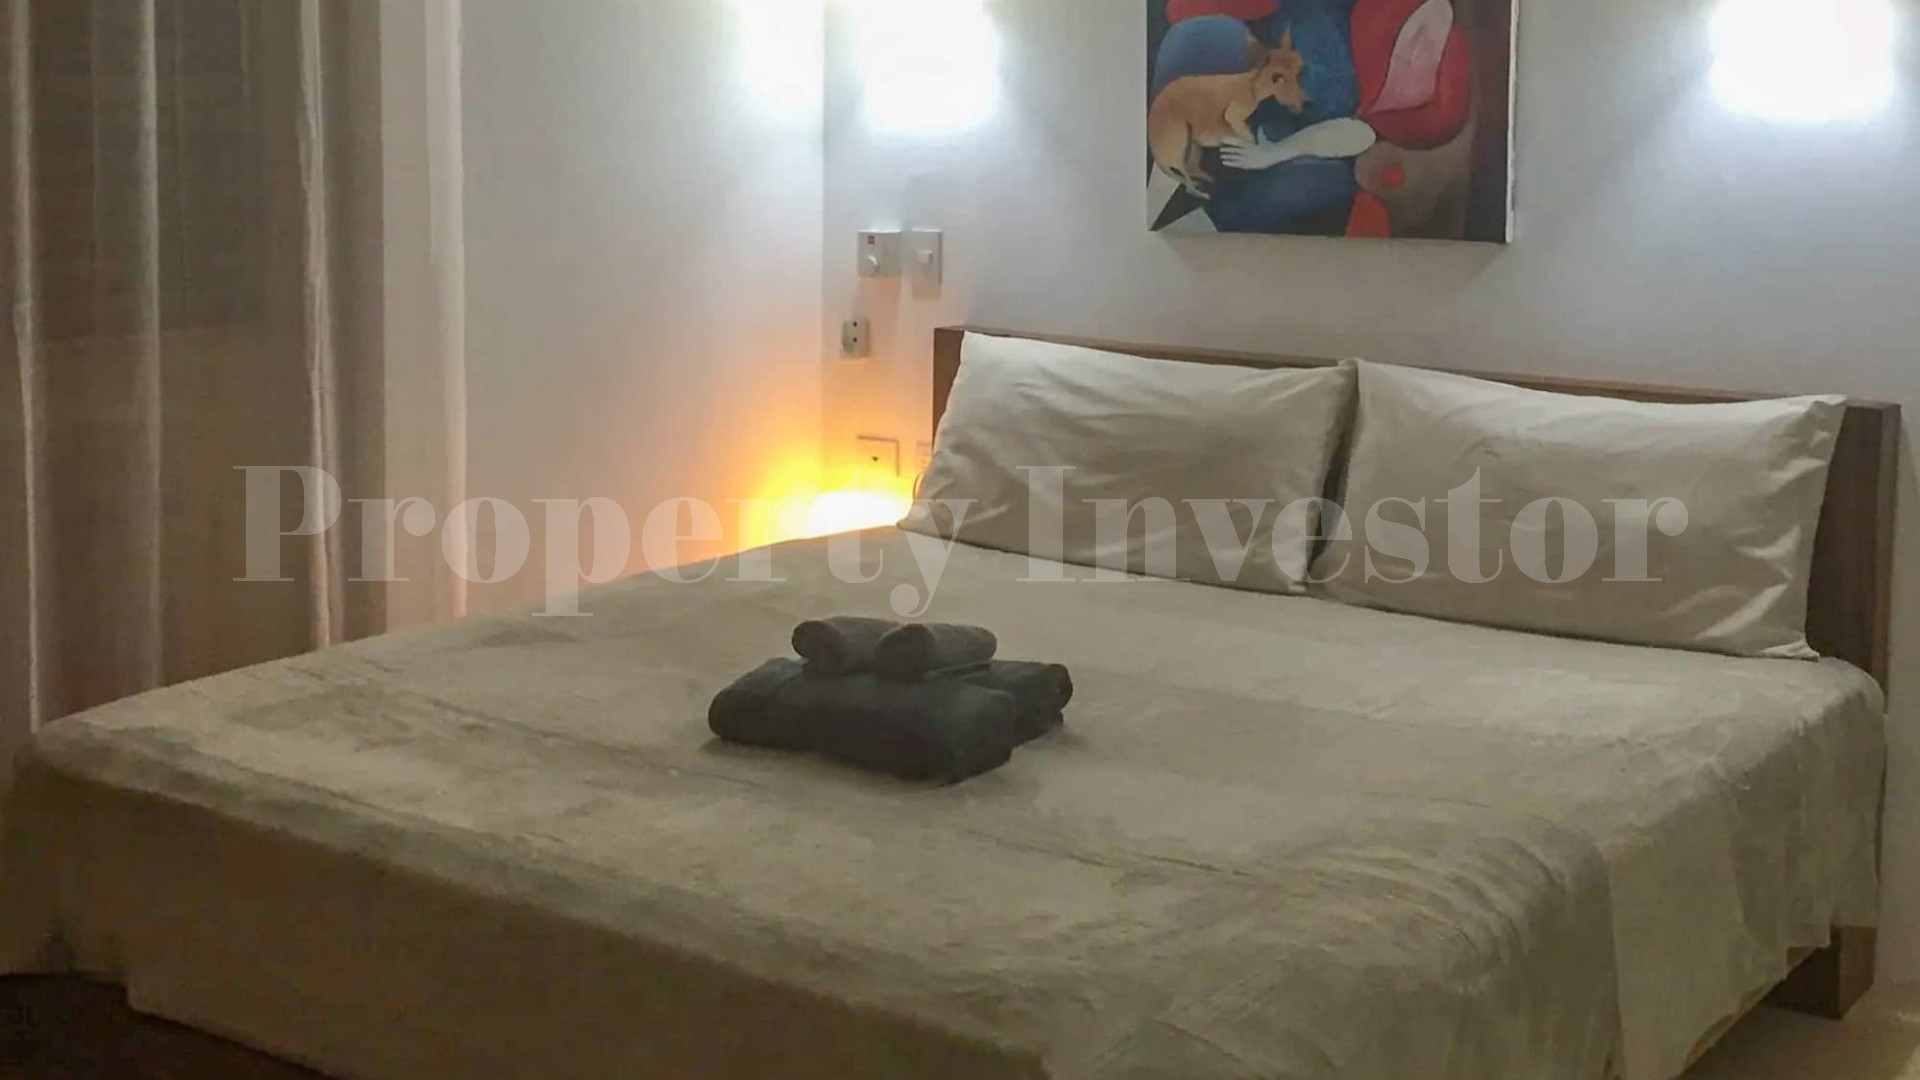 Comfortable 5 Bedroom Luxury Gated Community Villa for Sale in Playa Coson, Las Terrenas